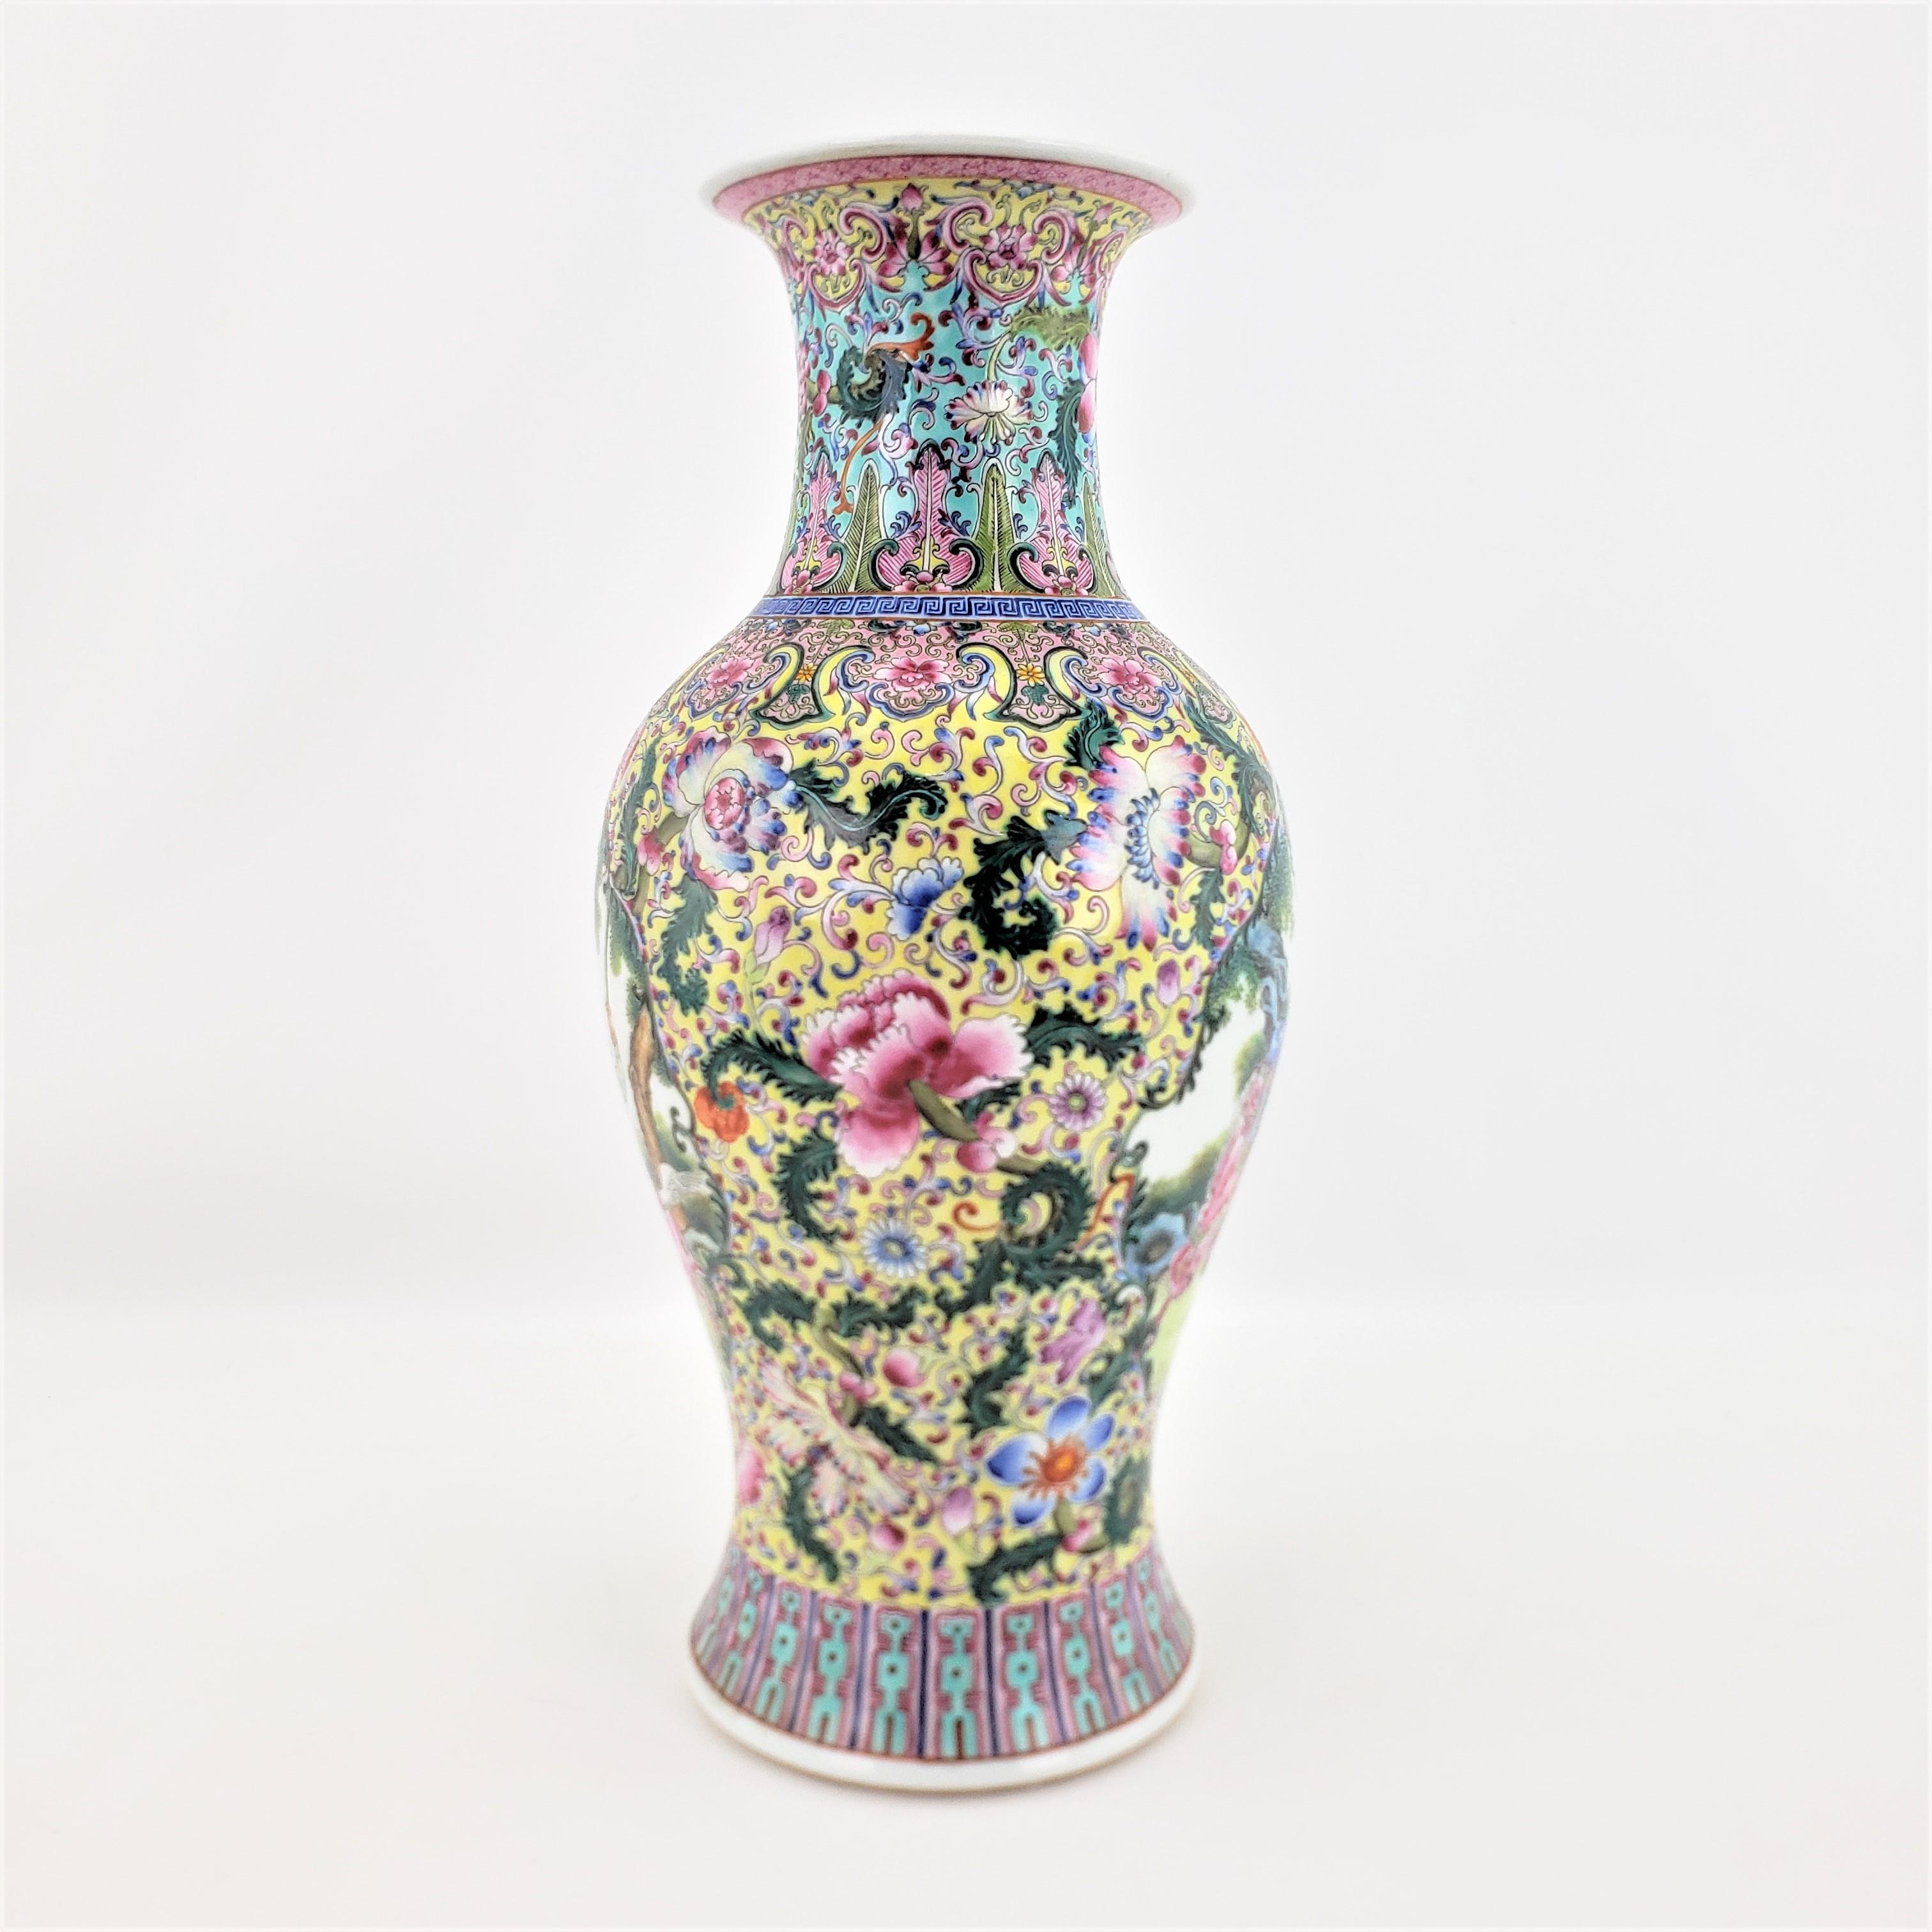 Ce vase ancien, peint à la main de façon complexe, est signé sur la base, mais nous n'avons pas pu identifier le fabricant. Il est originaire de Chine et date d'environ 1920, dans un style d'exportation chinoise. Le vase, qui était autrefois un pied